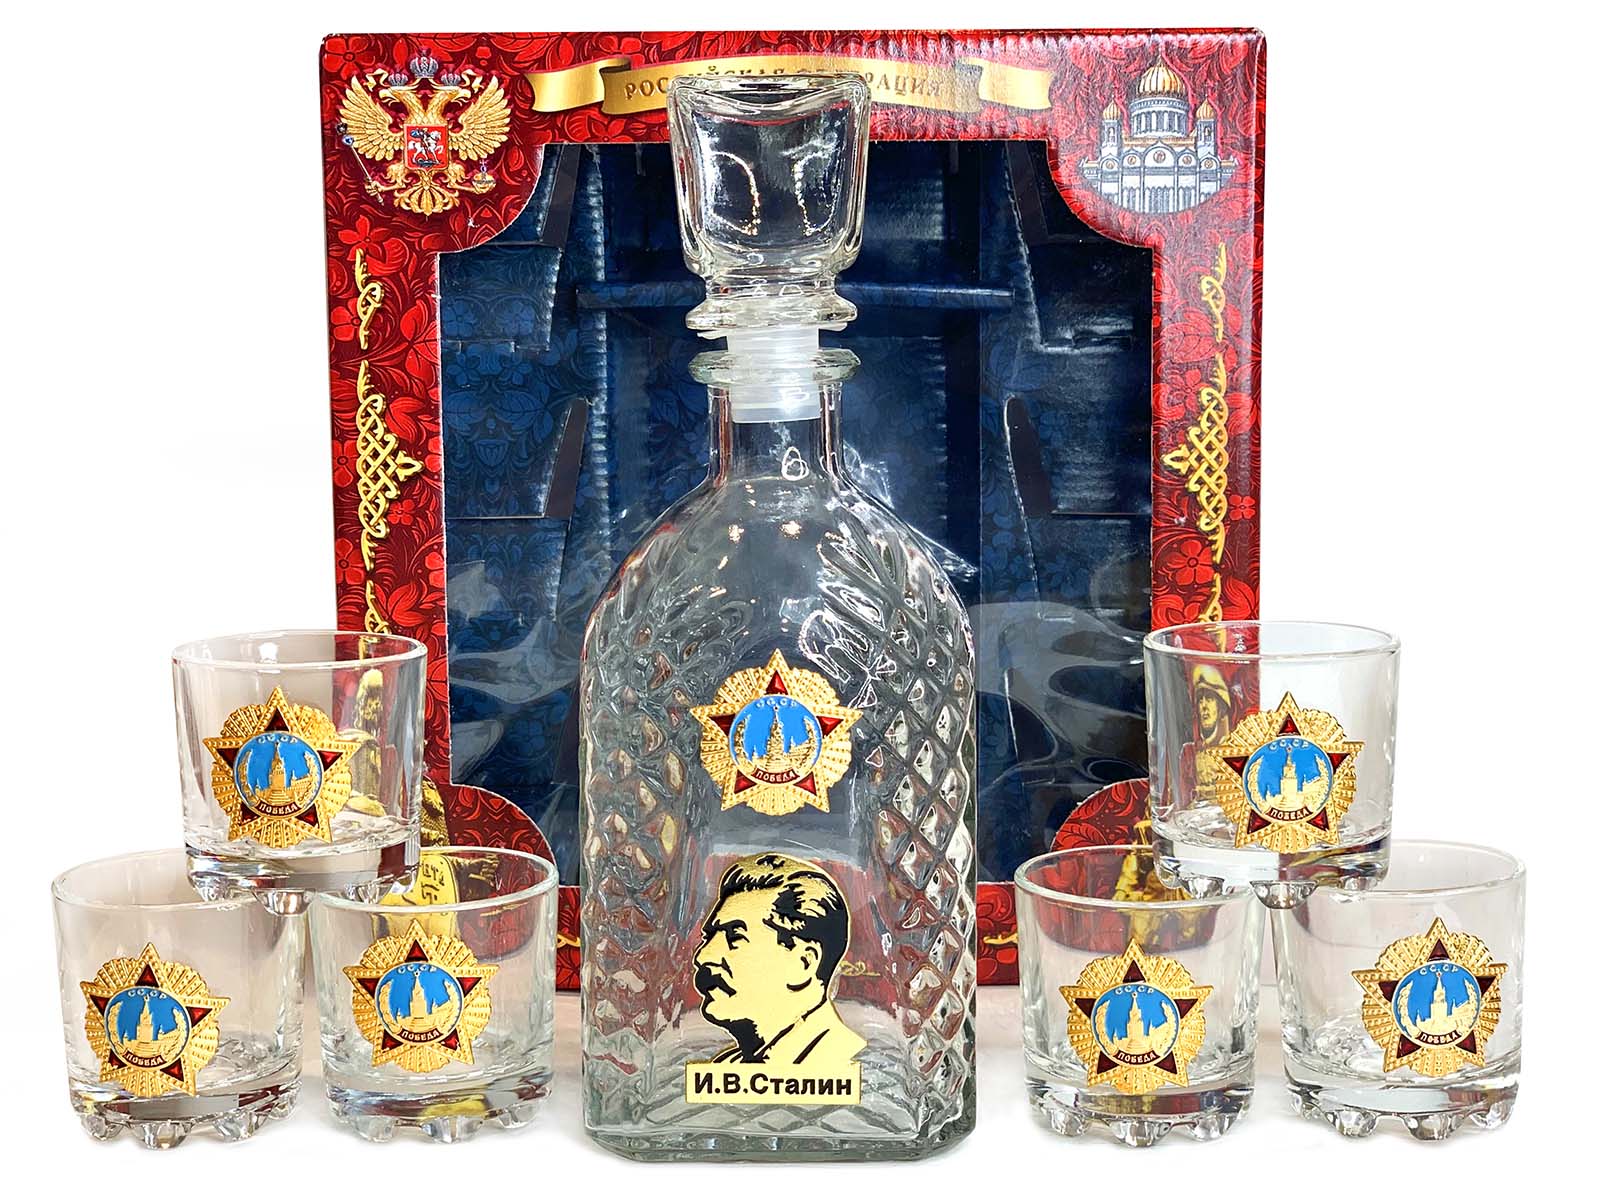 Подарочный набор для крепких напитков со Сталиным